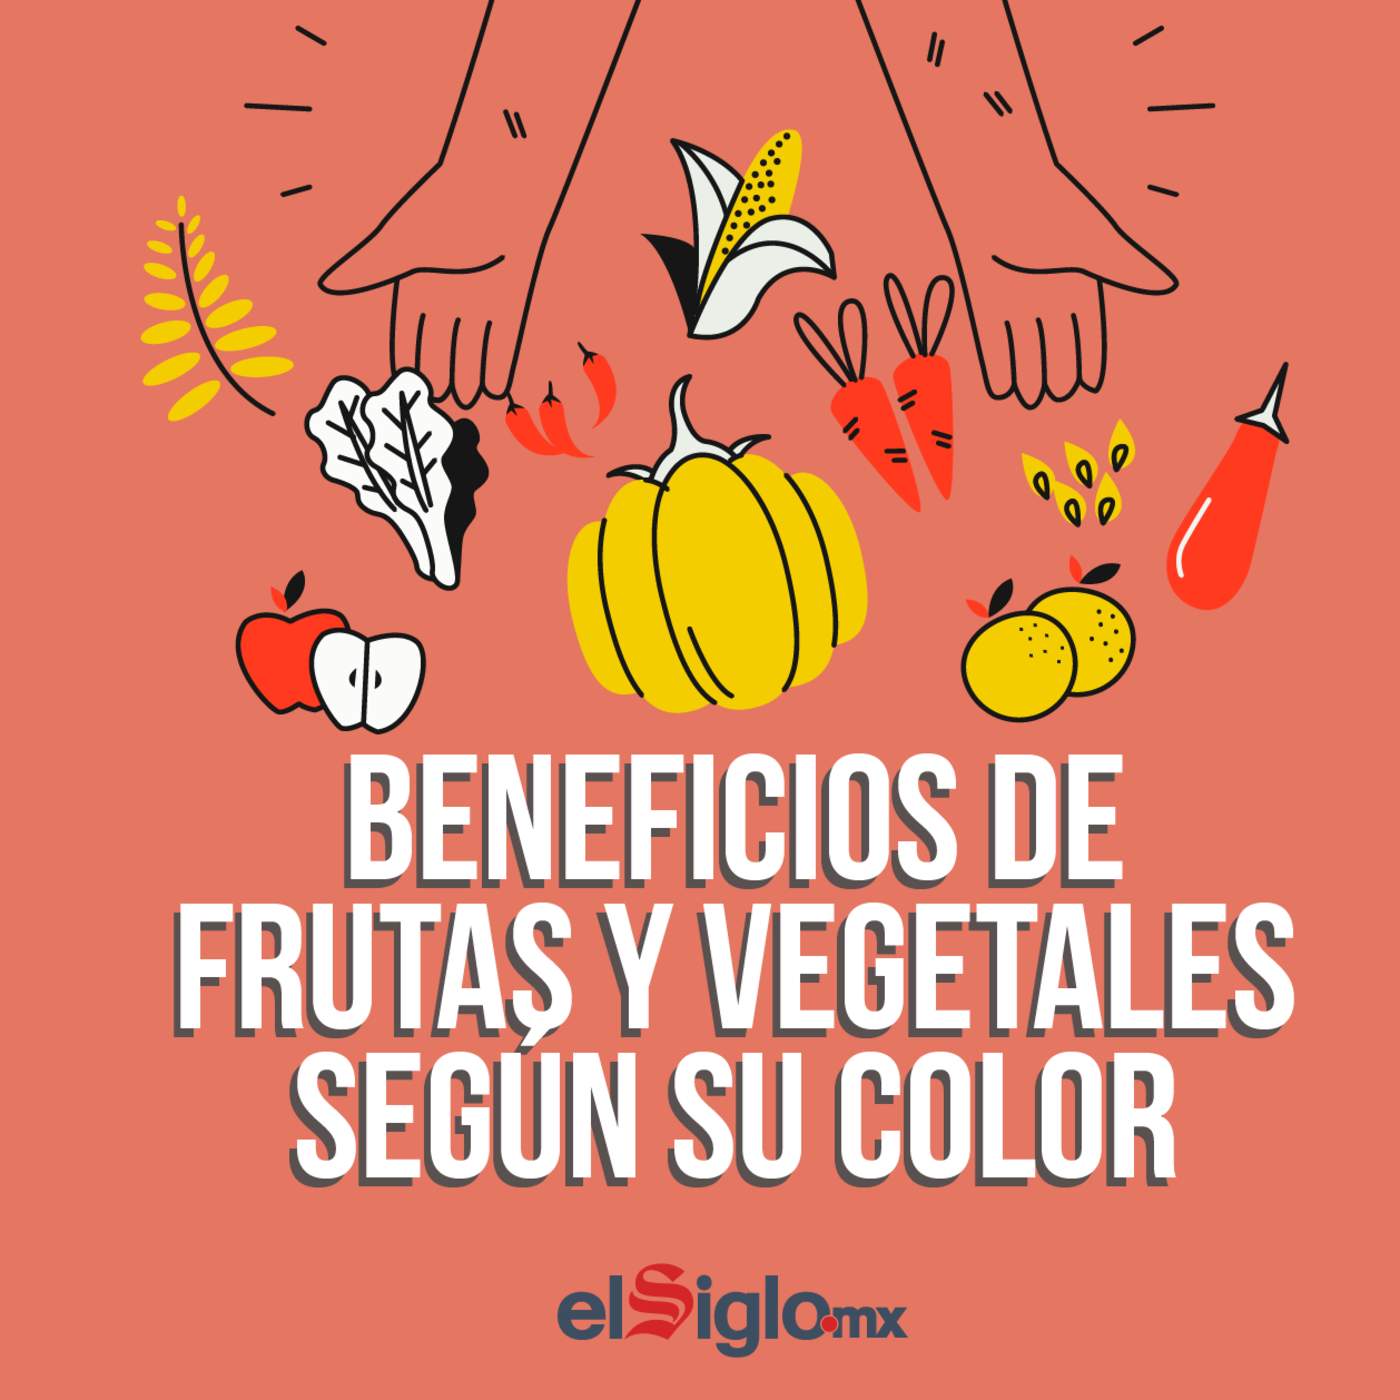 Según su color, cada fruta o vegetal tiene propiedades diferentes. (TOM PALOMARES)